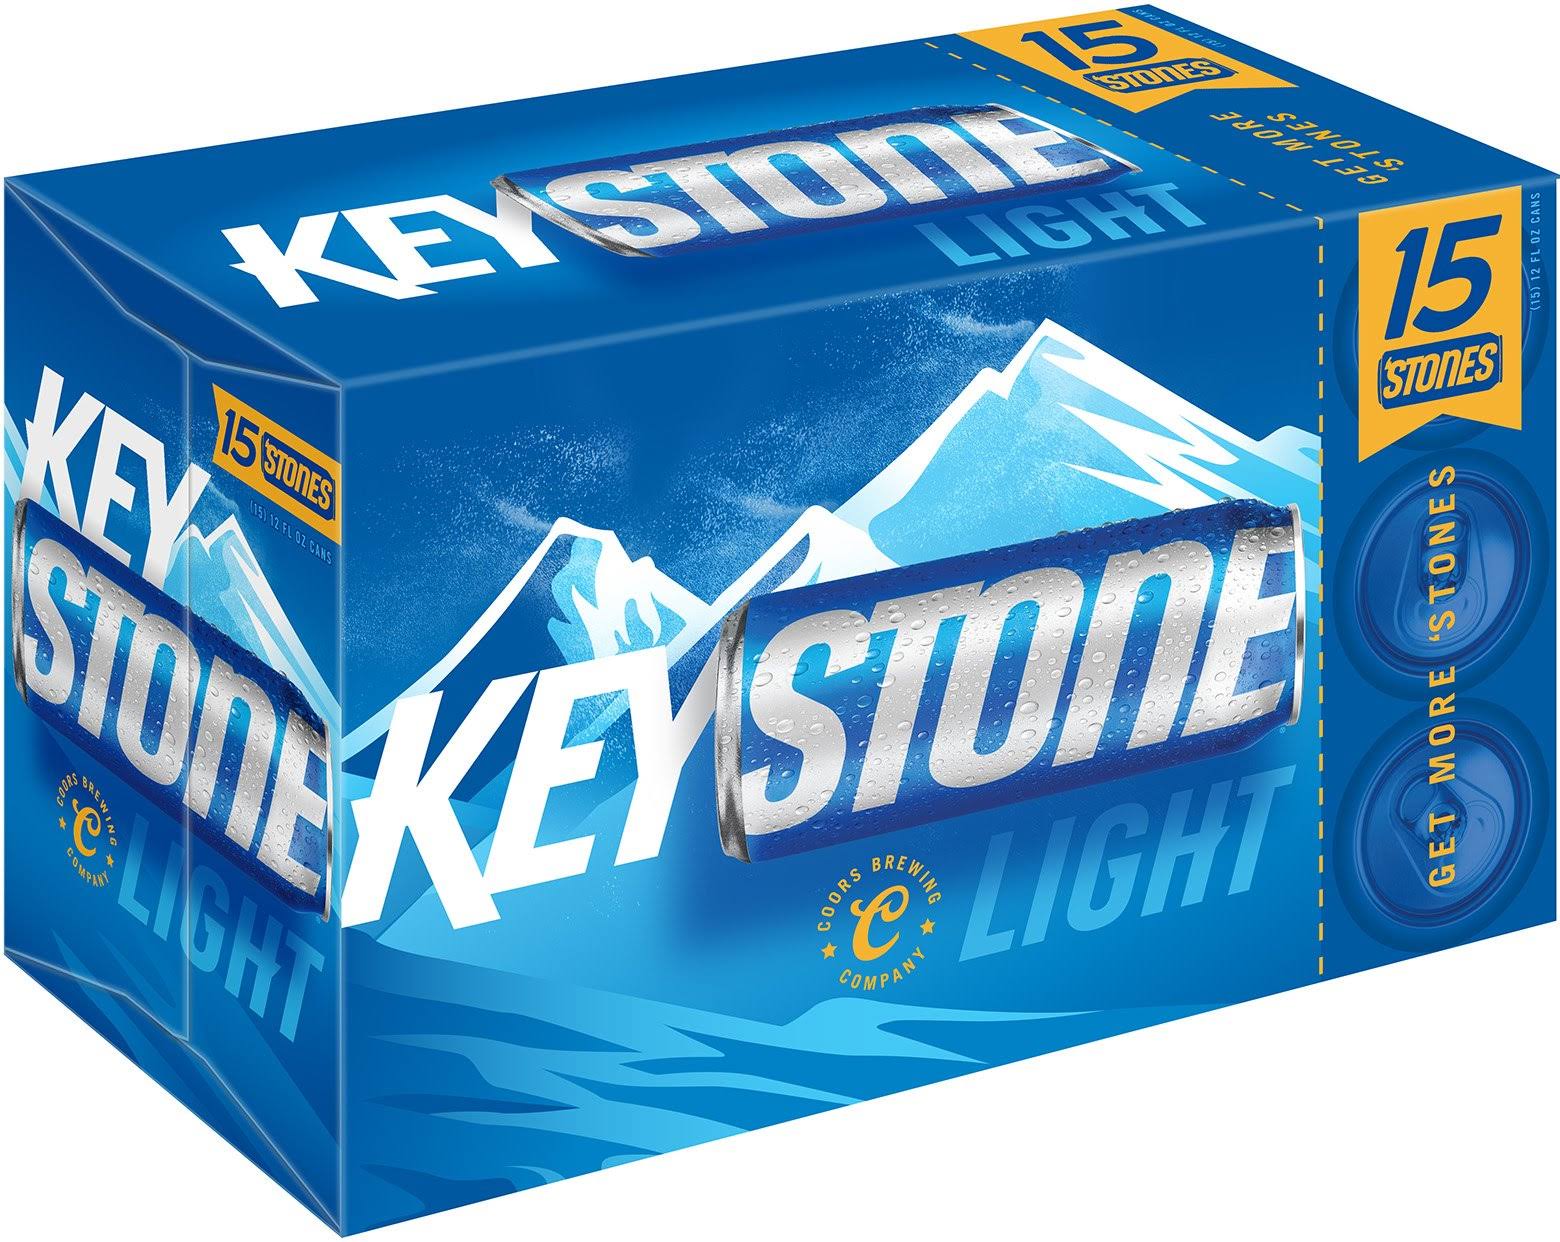 Keystone Light Beer - 15 pack, 12 fl oz cans